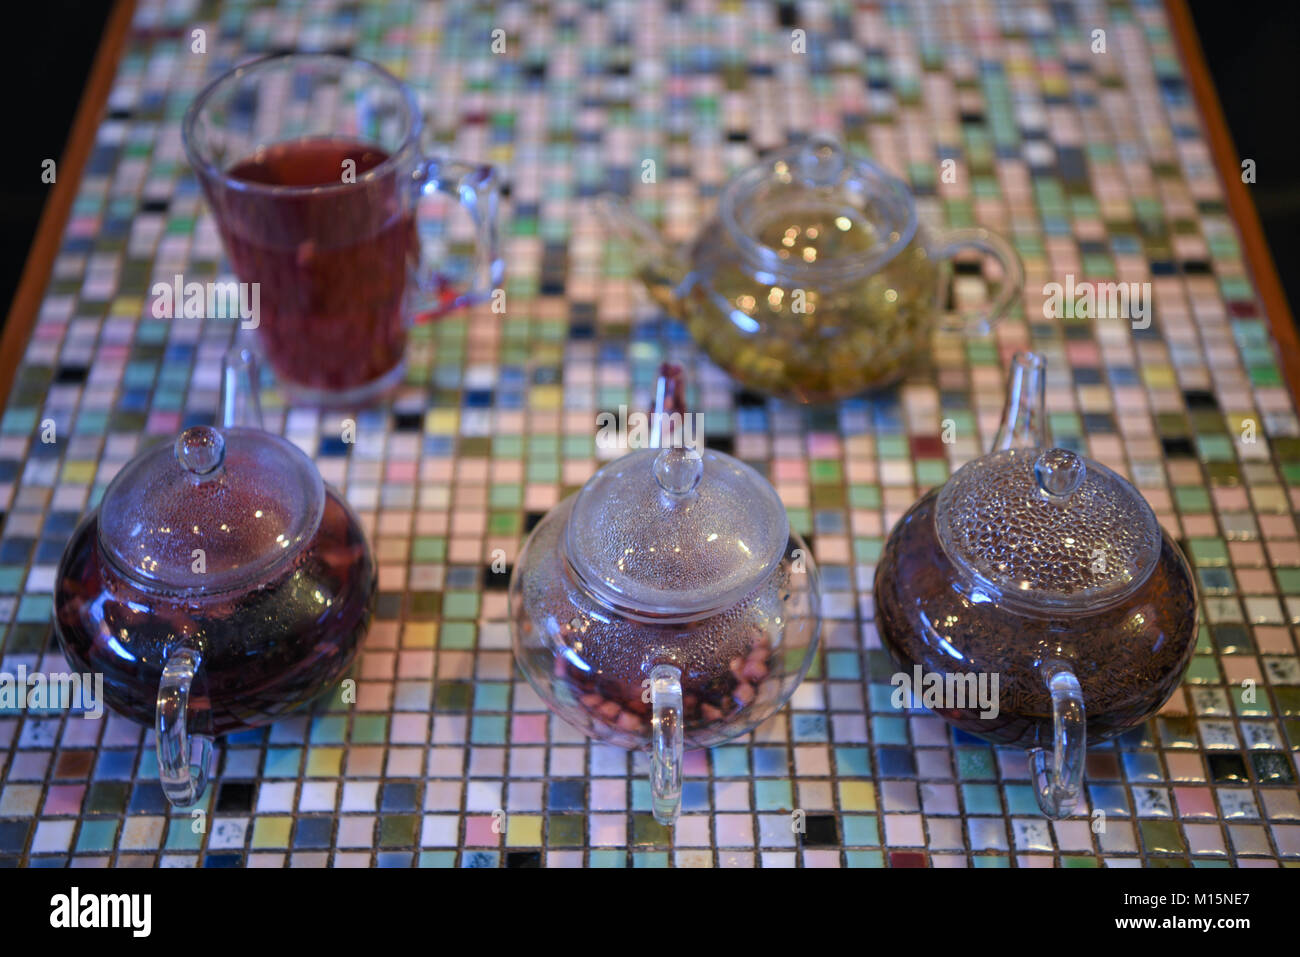 Bunte Bild mit Glas Teekanne mit heißem Obst Tee Getränken gefüllt auf einem Mosaik quadratischen Muster Tischplatte mit einem Gegossenen fertig zu haben. Stockfoto